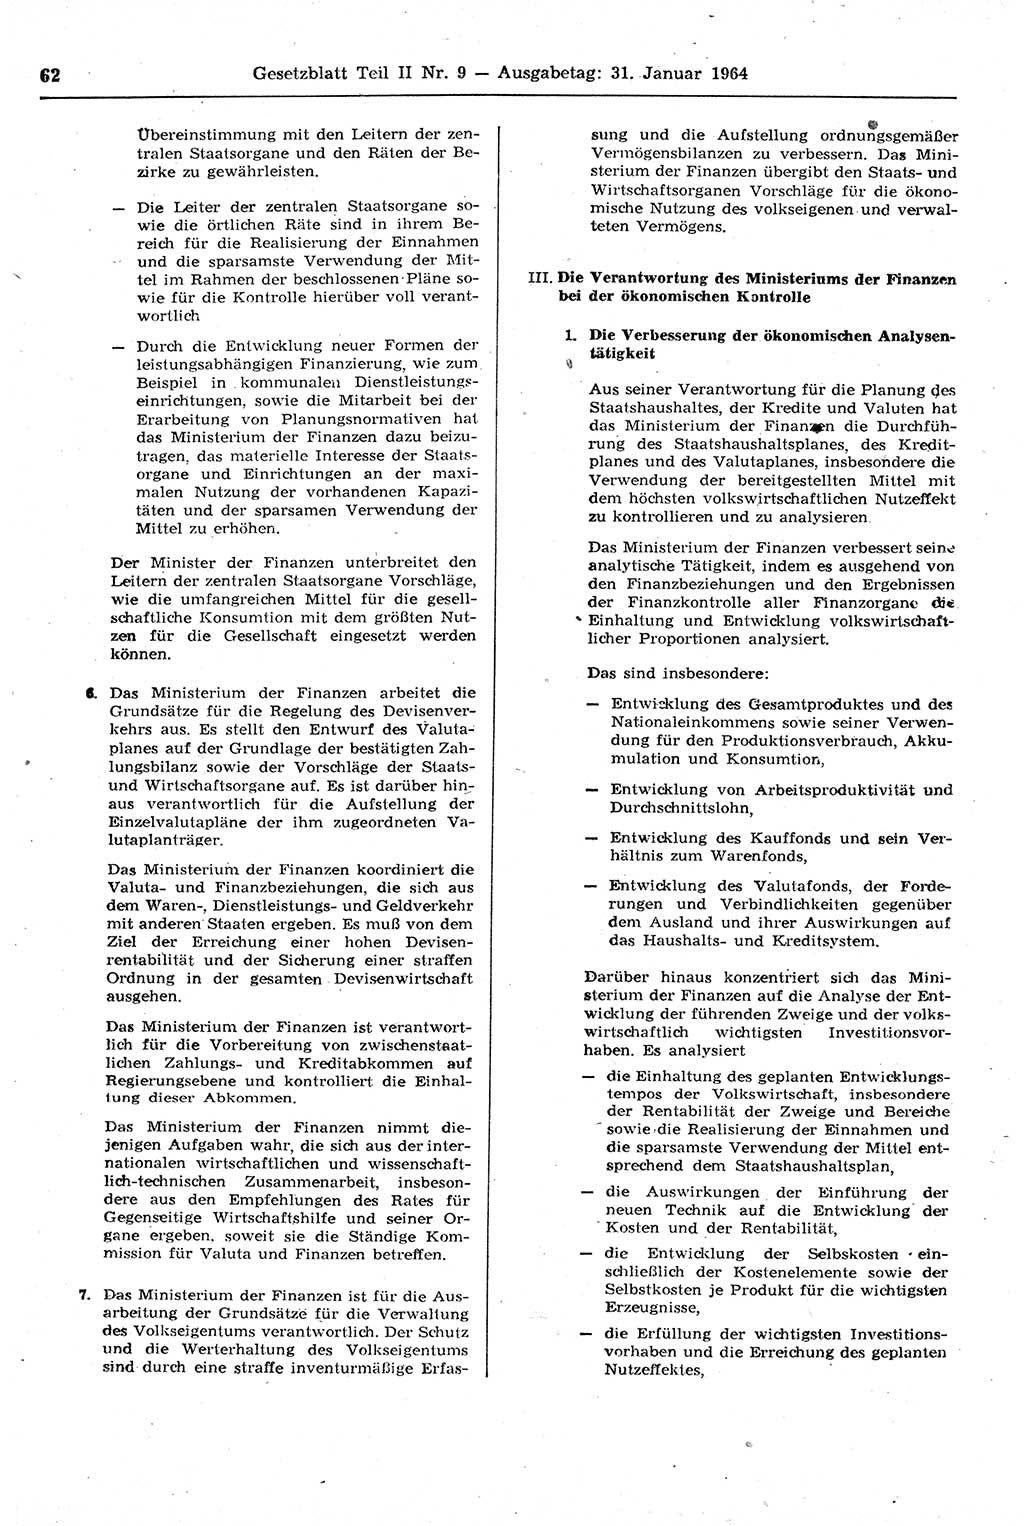 Gesetzblatt (GBl.) der Deutschen Demokratischen Republik (DDR) Teil ⅠⅠ 1964, Seite 62 (GBl. DDR ⅠⅠ 1964, S. 62)